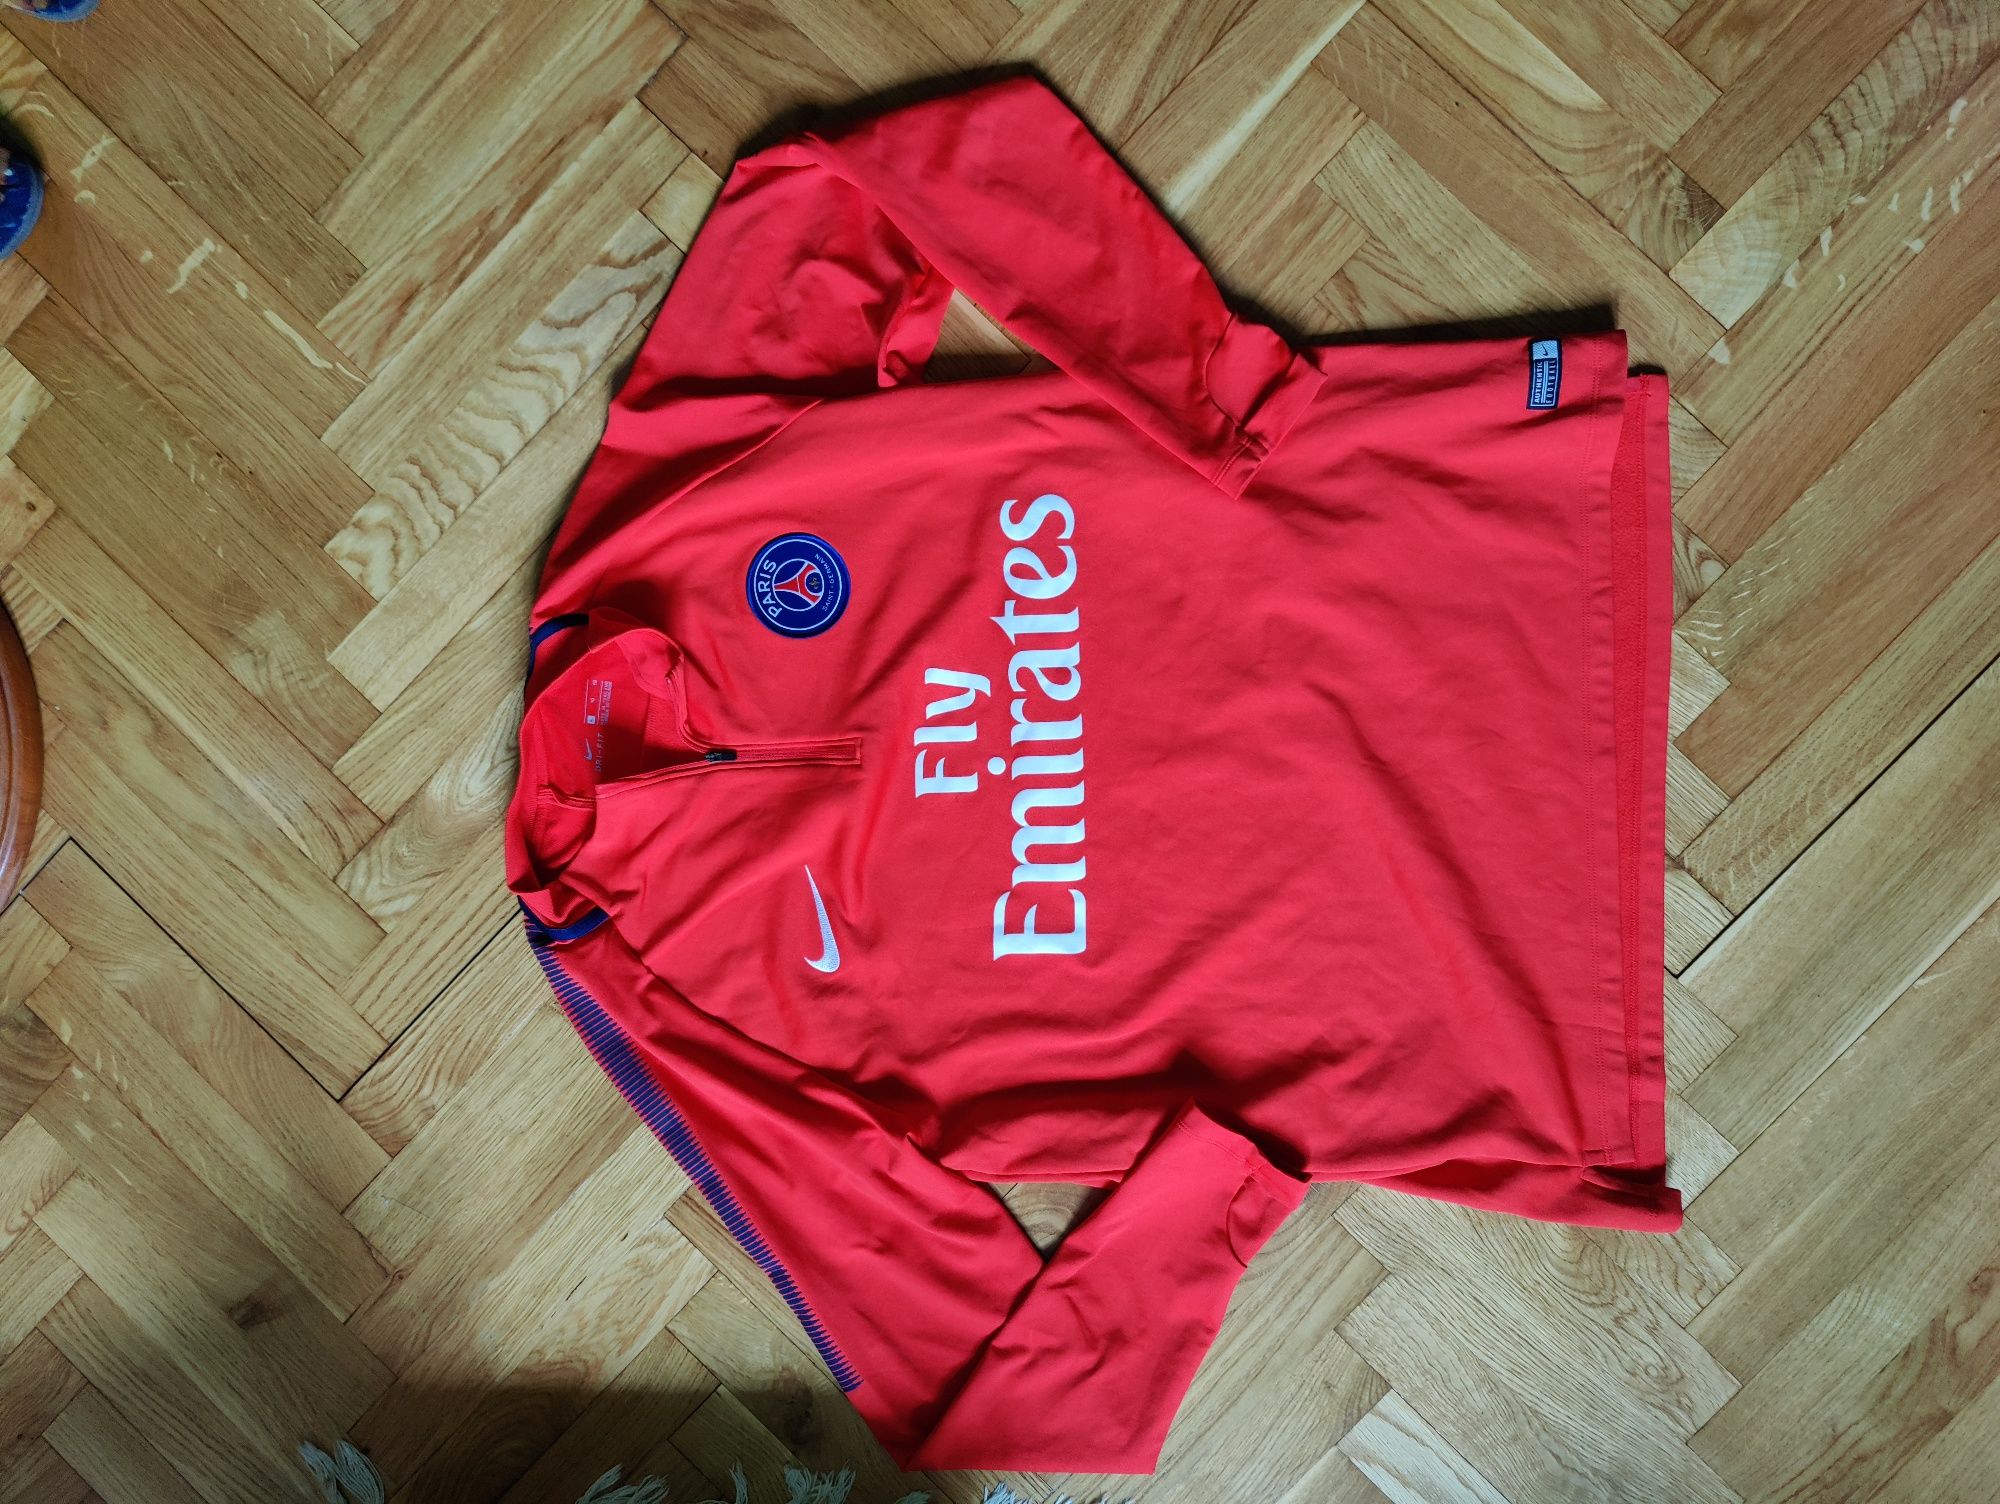 Paris Saint Germain NIKE XL bluza treningowa ocieplana na jesień